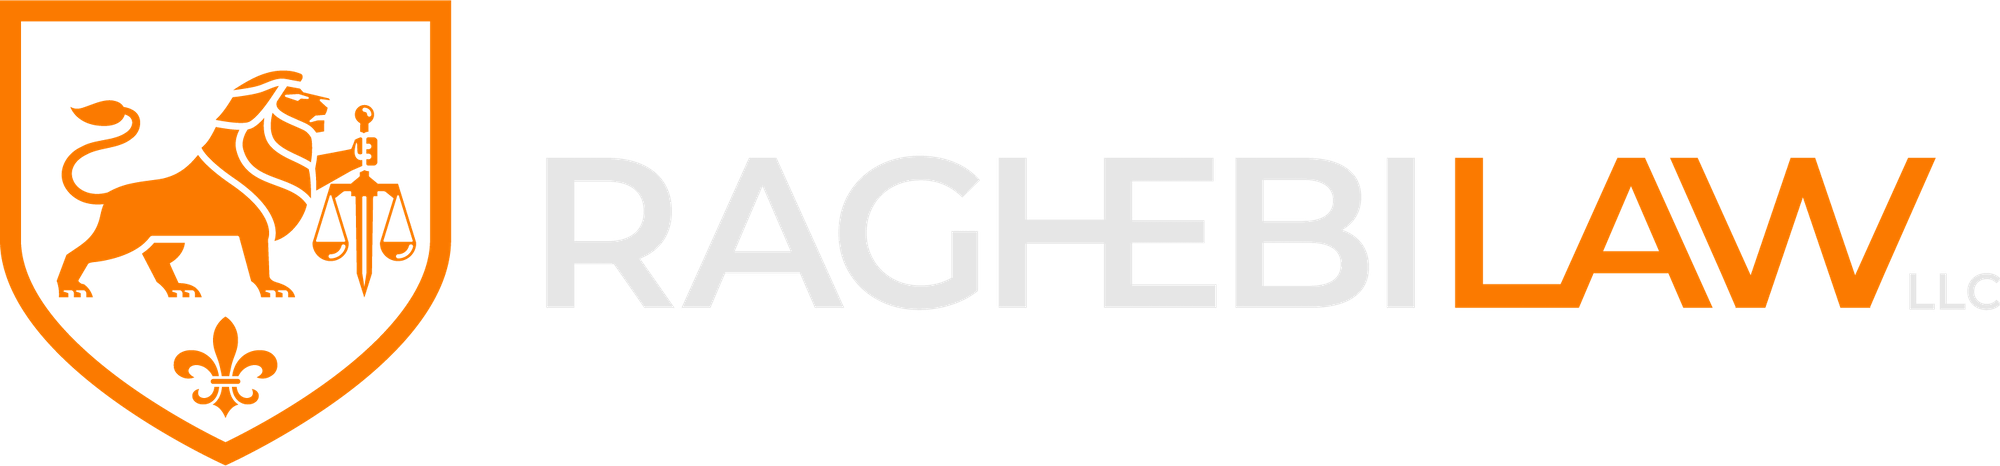 Raghebi Law LLC Logo